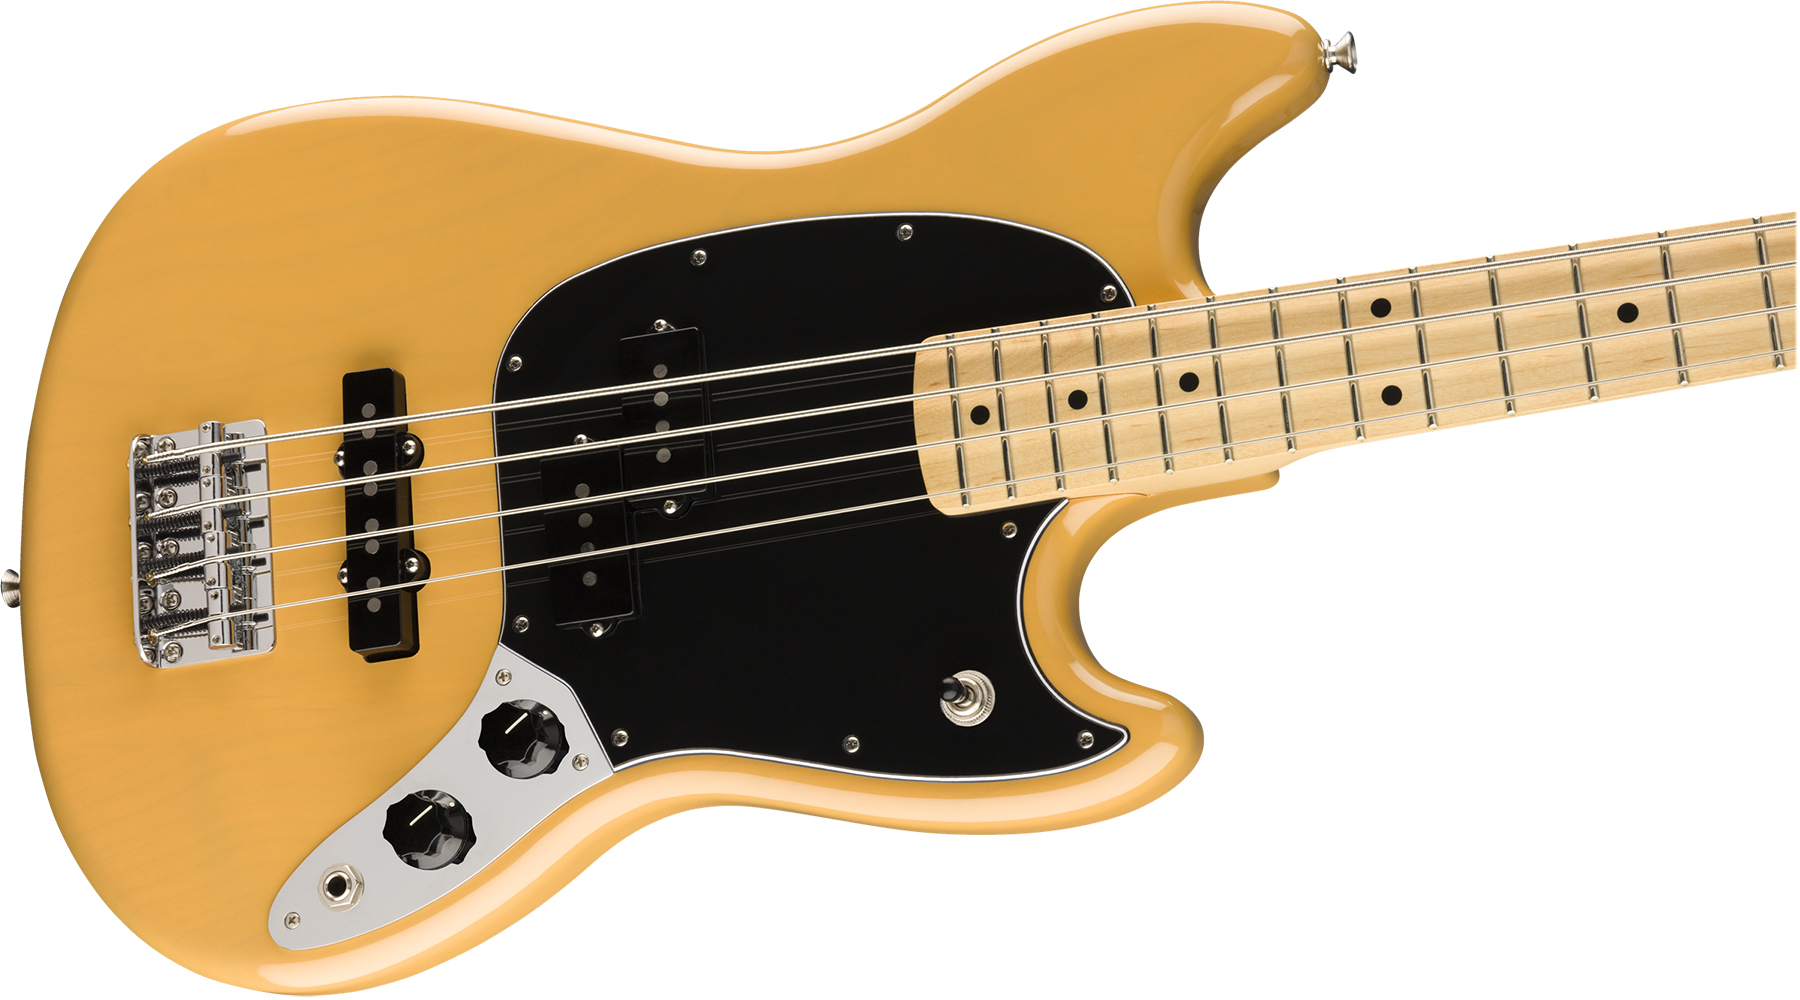 Fender Mustang Bass Pj Player Ltd Mex Mn - Butterscotch Blonde - Short scale elektrische bas - Variation 2